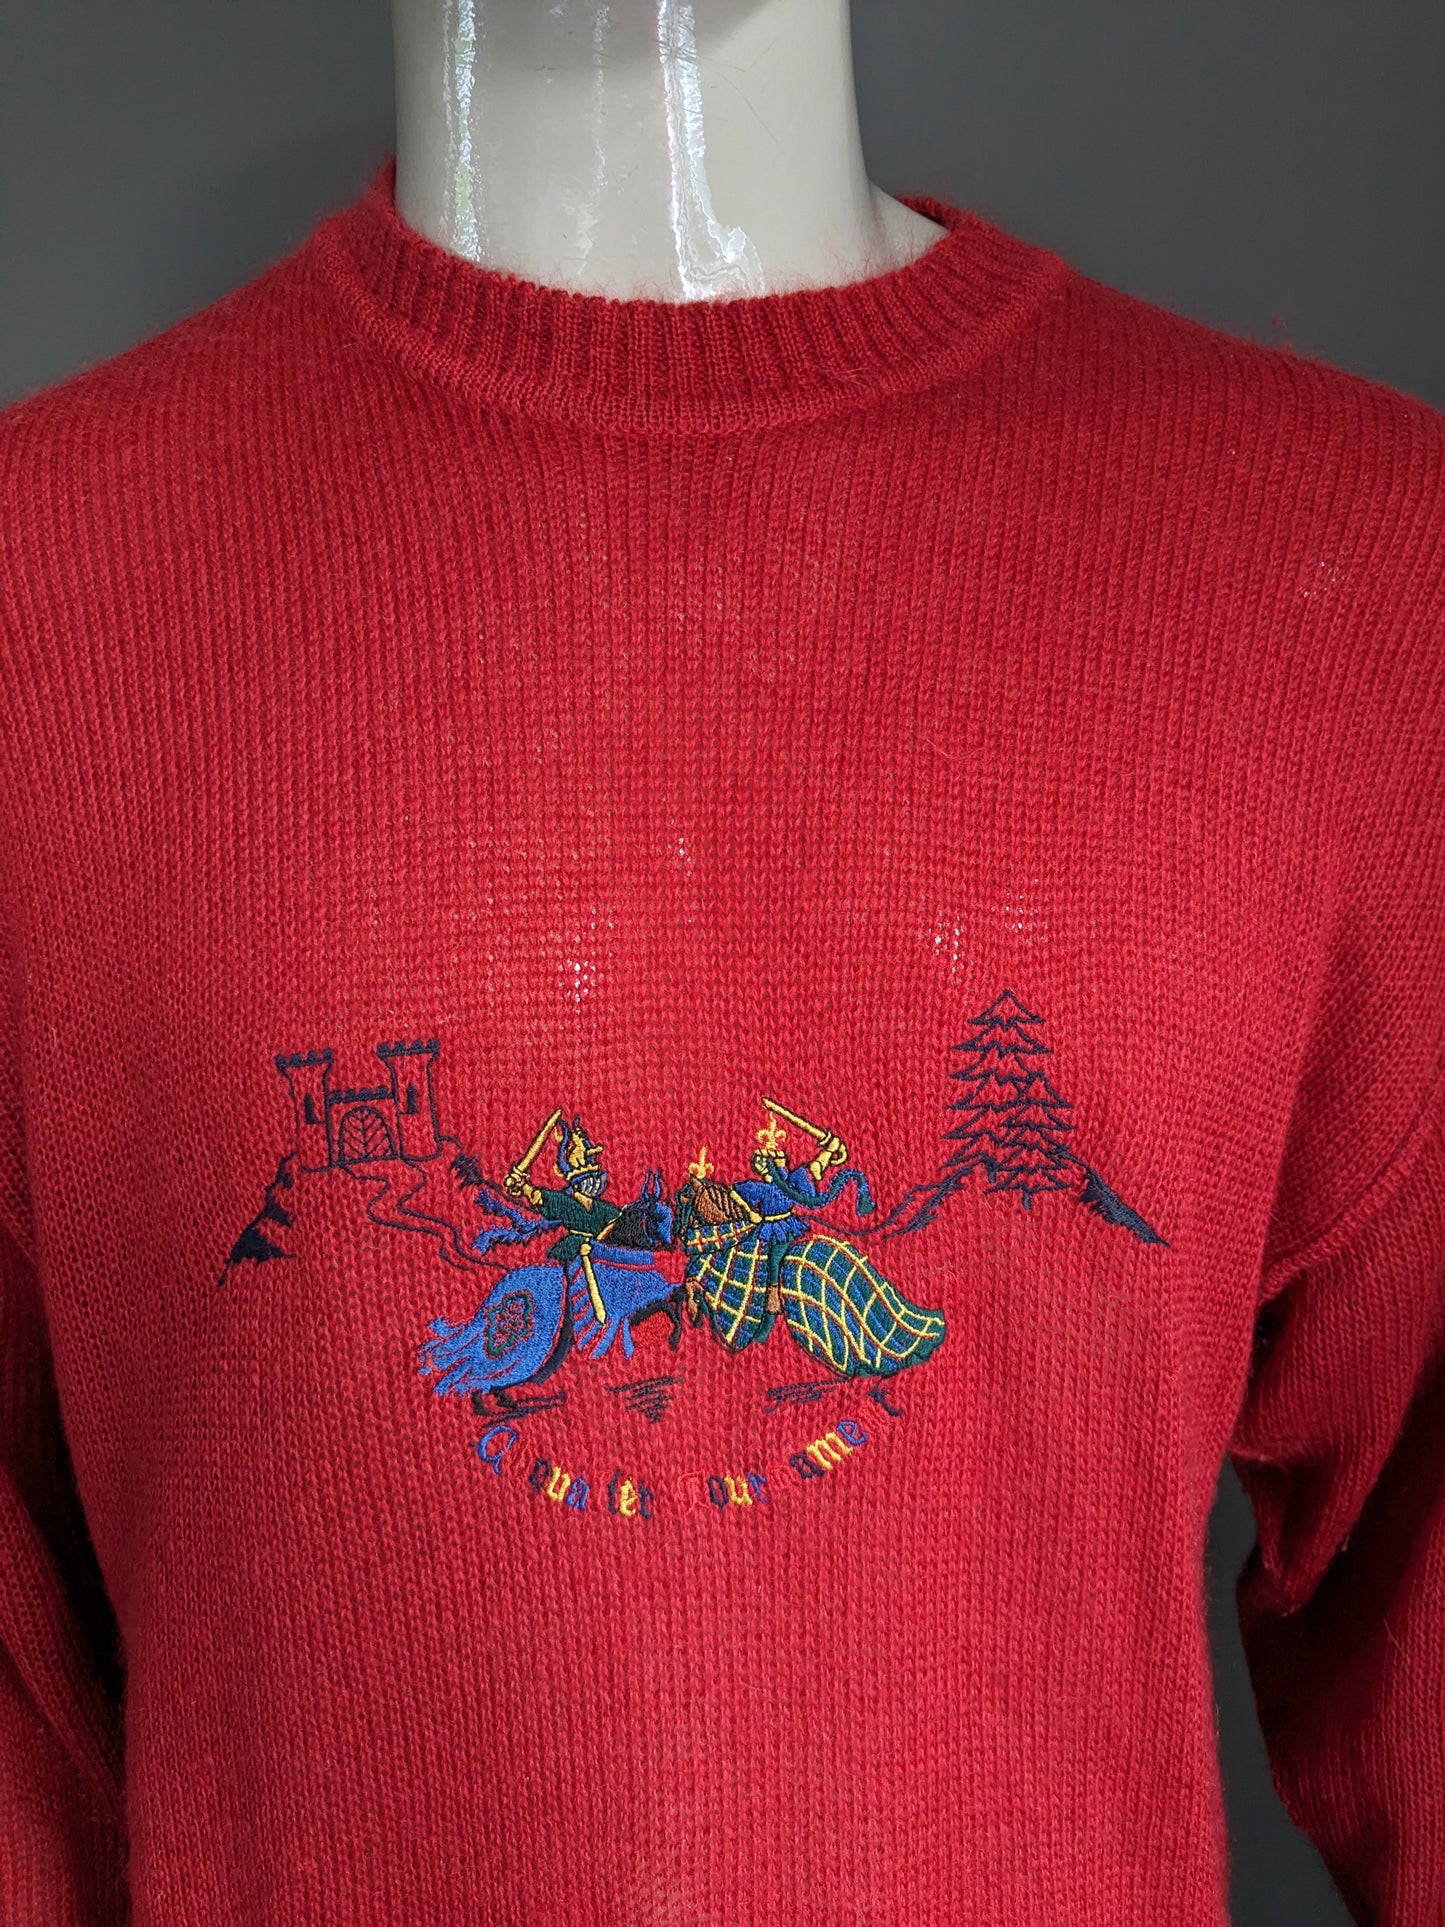 Vintage märz Mohair Wollpullover. Rot gefärbt mit Anwendungsfront. Größe xl.